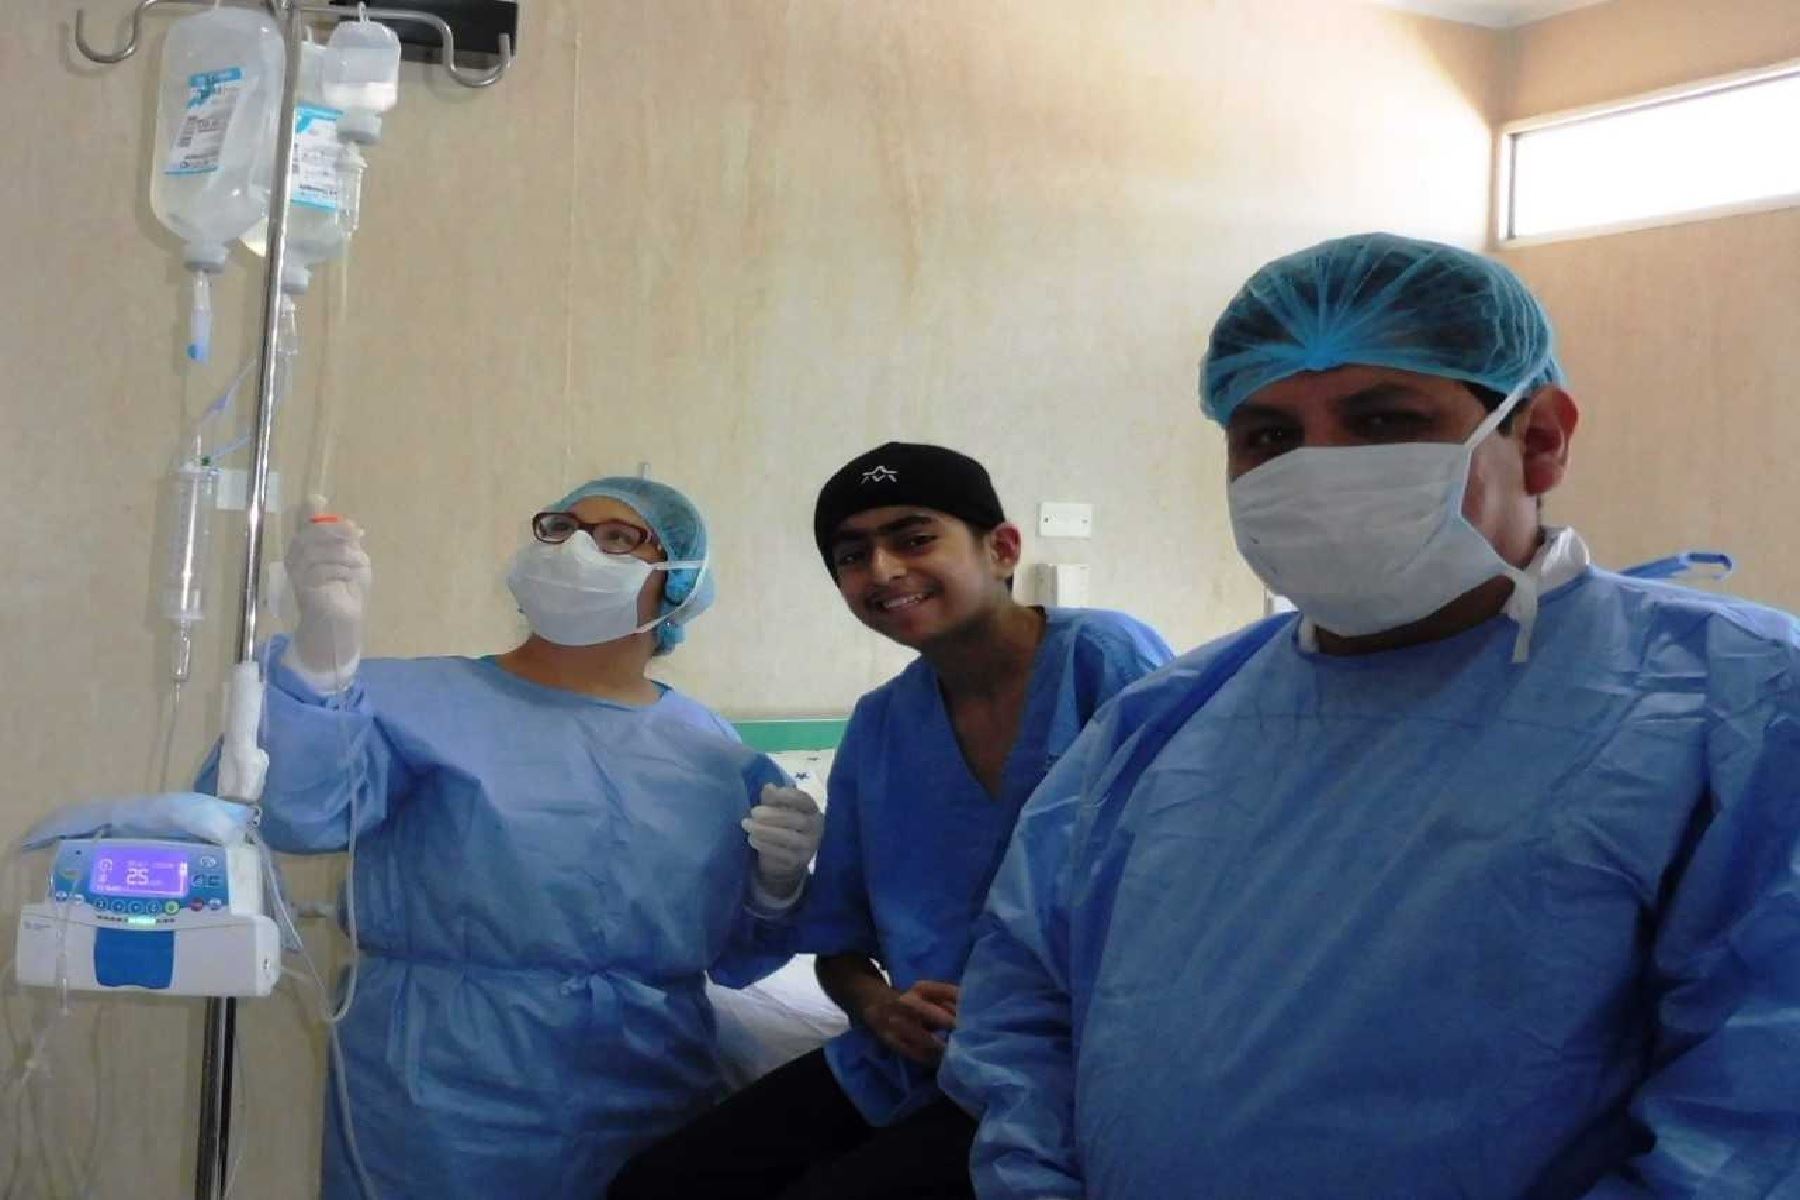 Profesionales de EsSalud altamente capacitados para este tipo de trasplante,  realizaron el delicado y riesgoso procedimiento médico de alta complejidad.